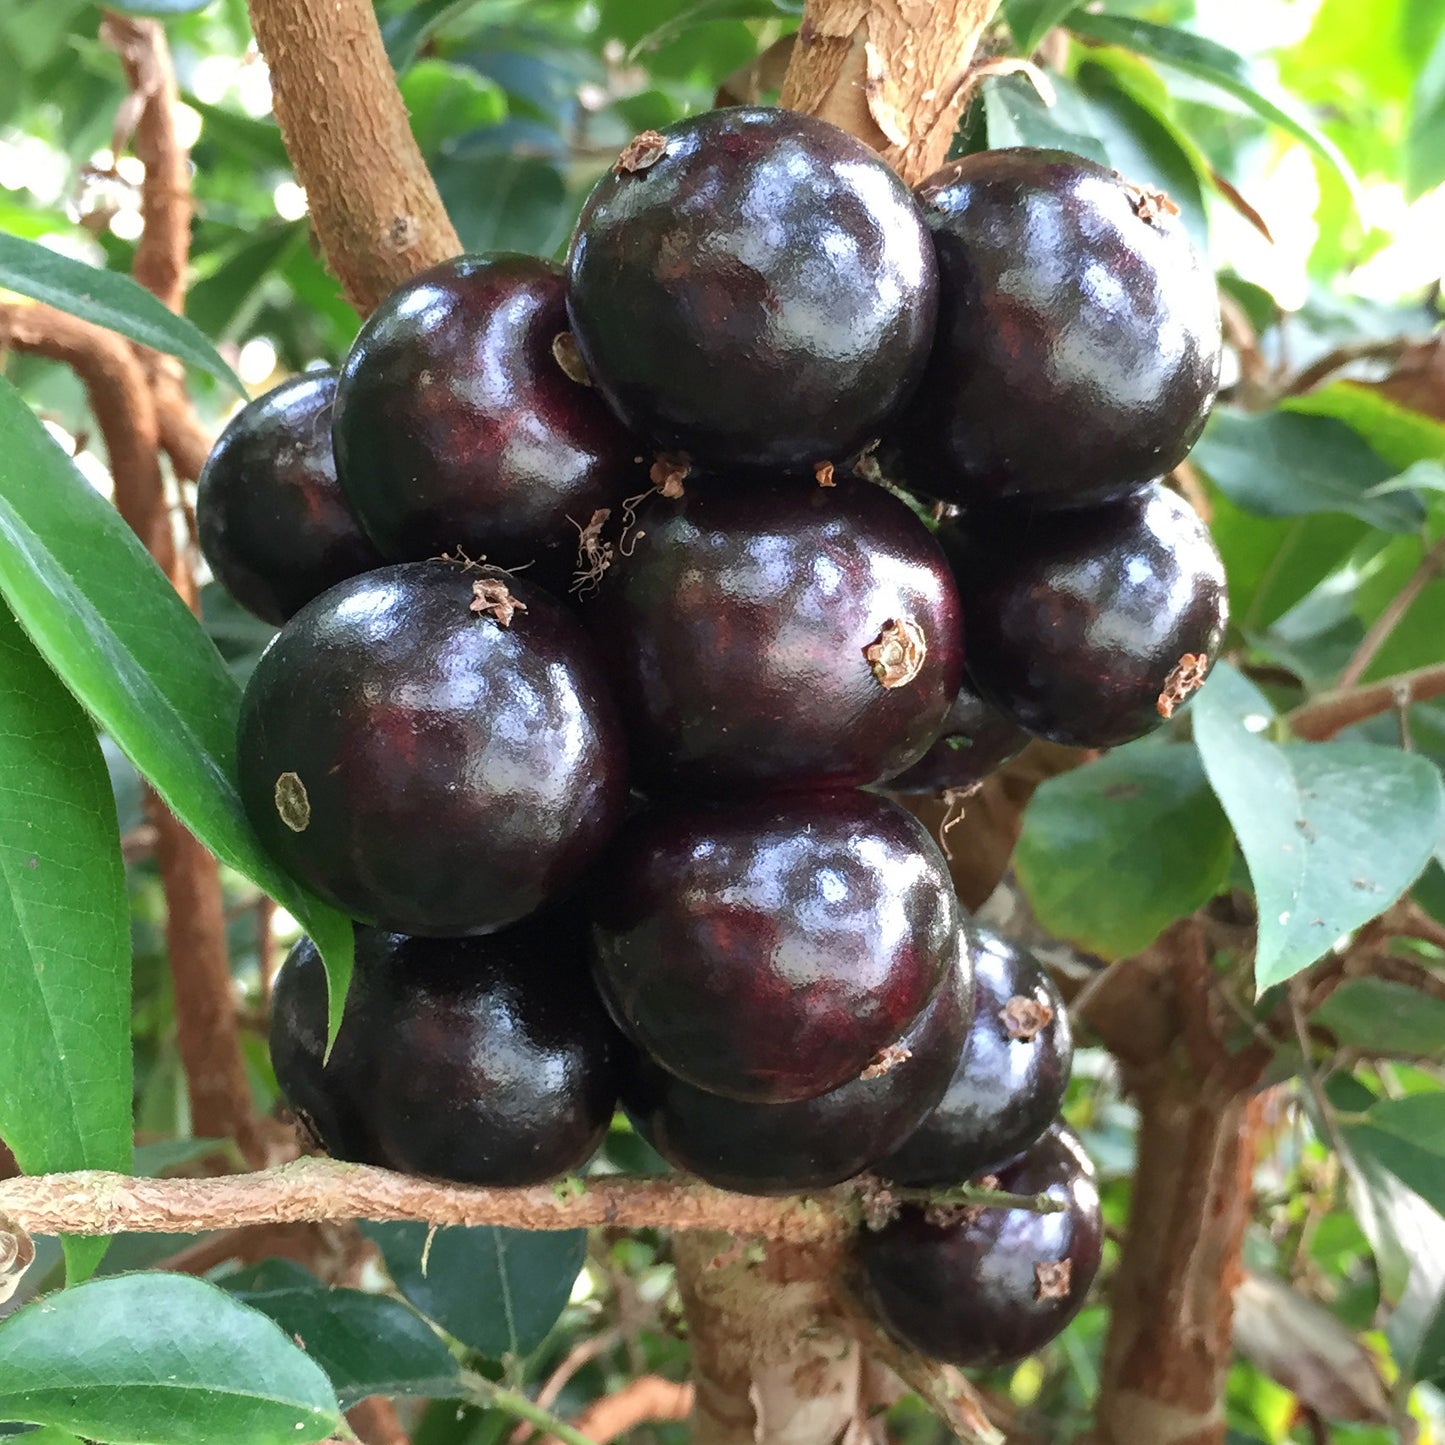 Sabara Jaboticaba Tree, Black Fruit